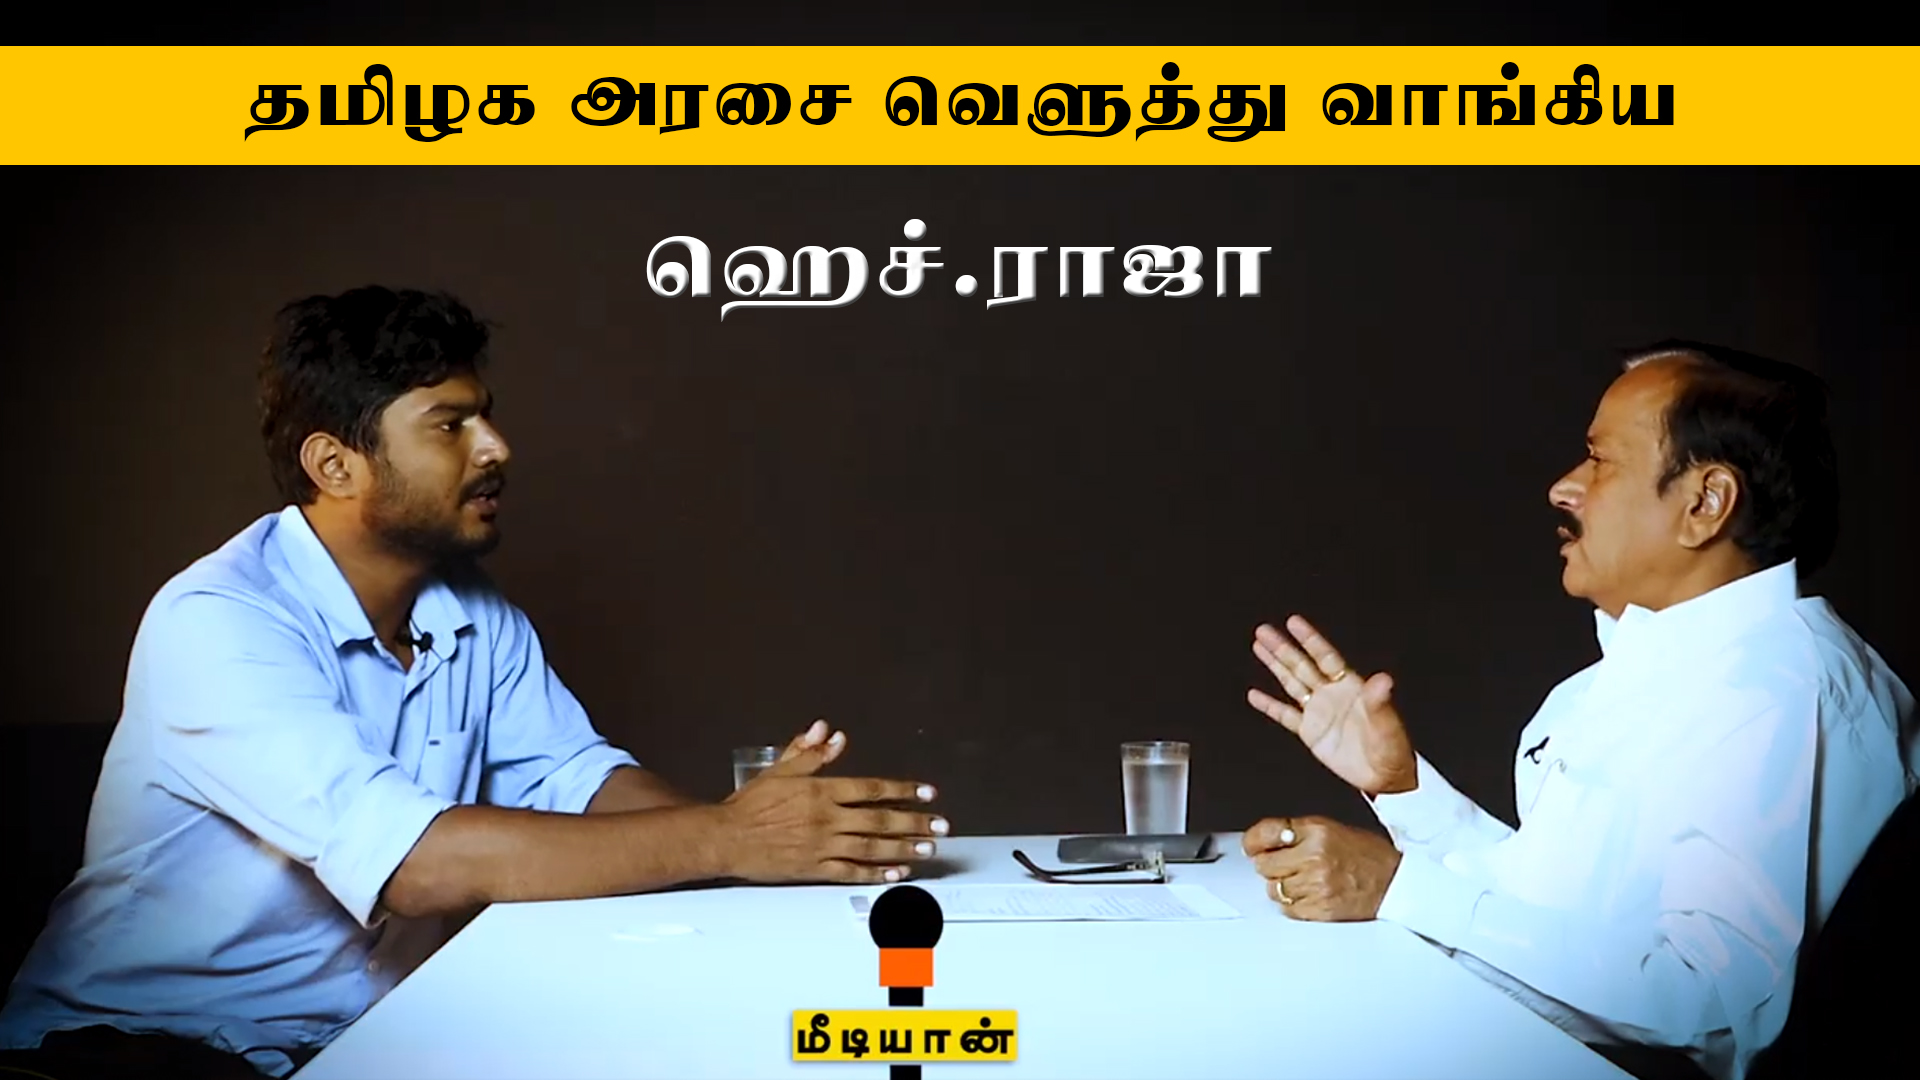 தமிழக அரசை வெளுத்து வாங்கிய ஹெச் ராஜா | H Raja | BJP TamilNadu | Mediyaan